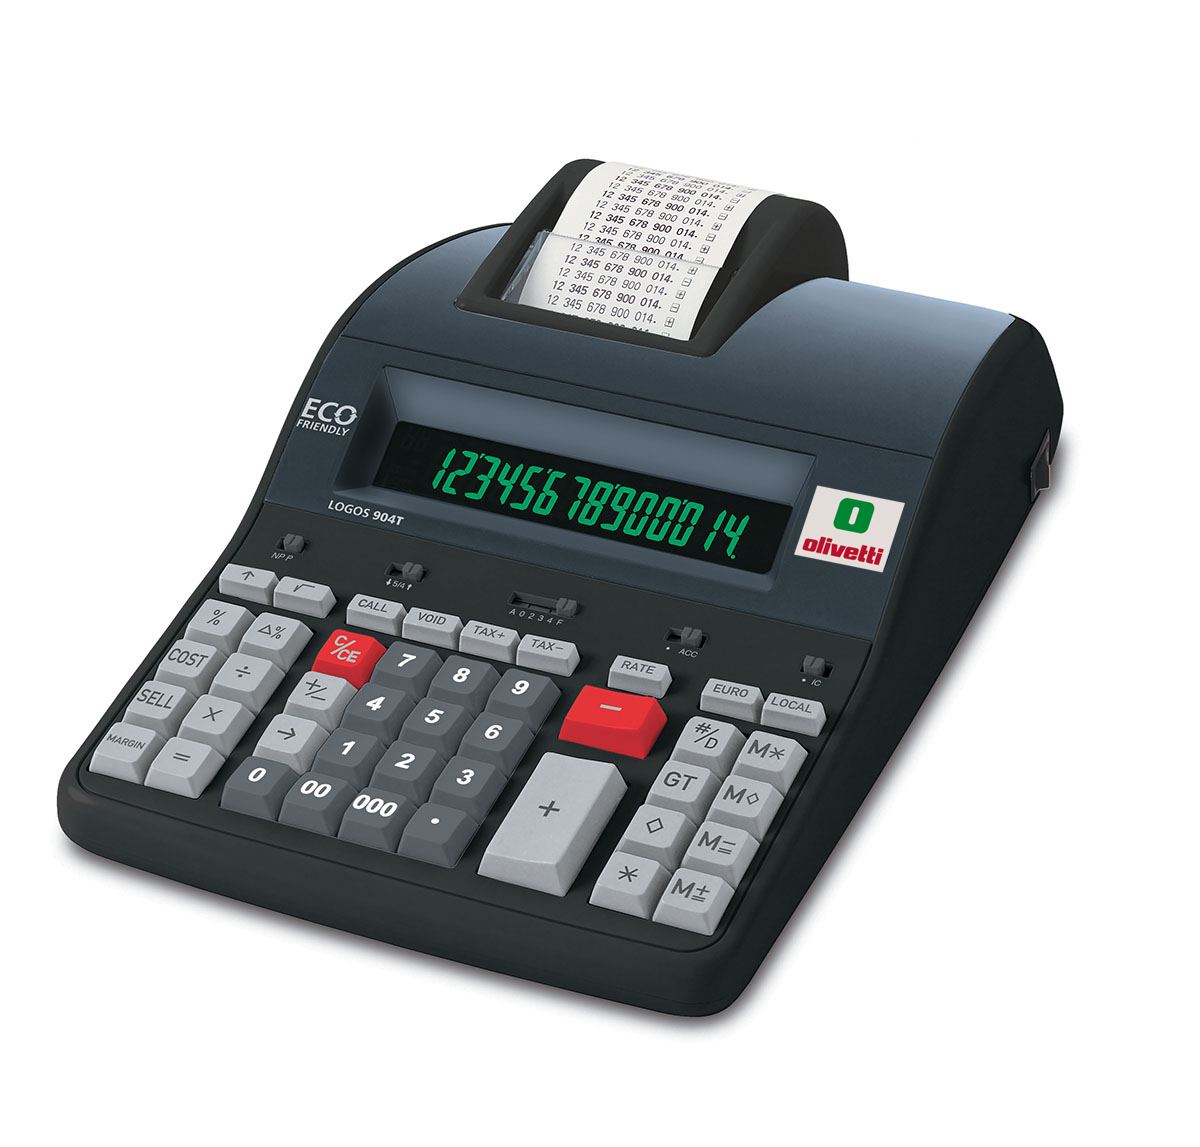 Details about   Rotoli di carta per Olivetti Logos calcolatore scrivente misure varie 